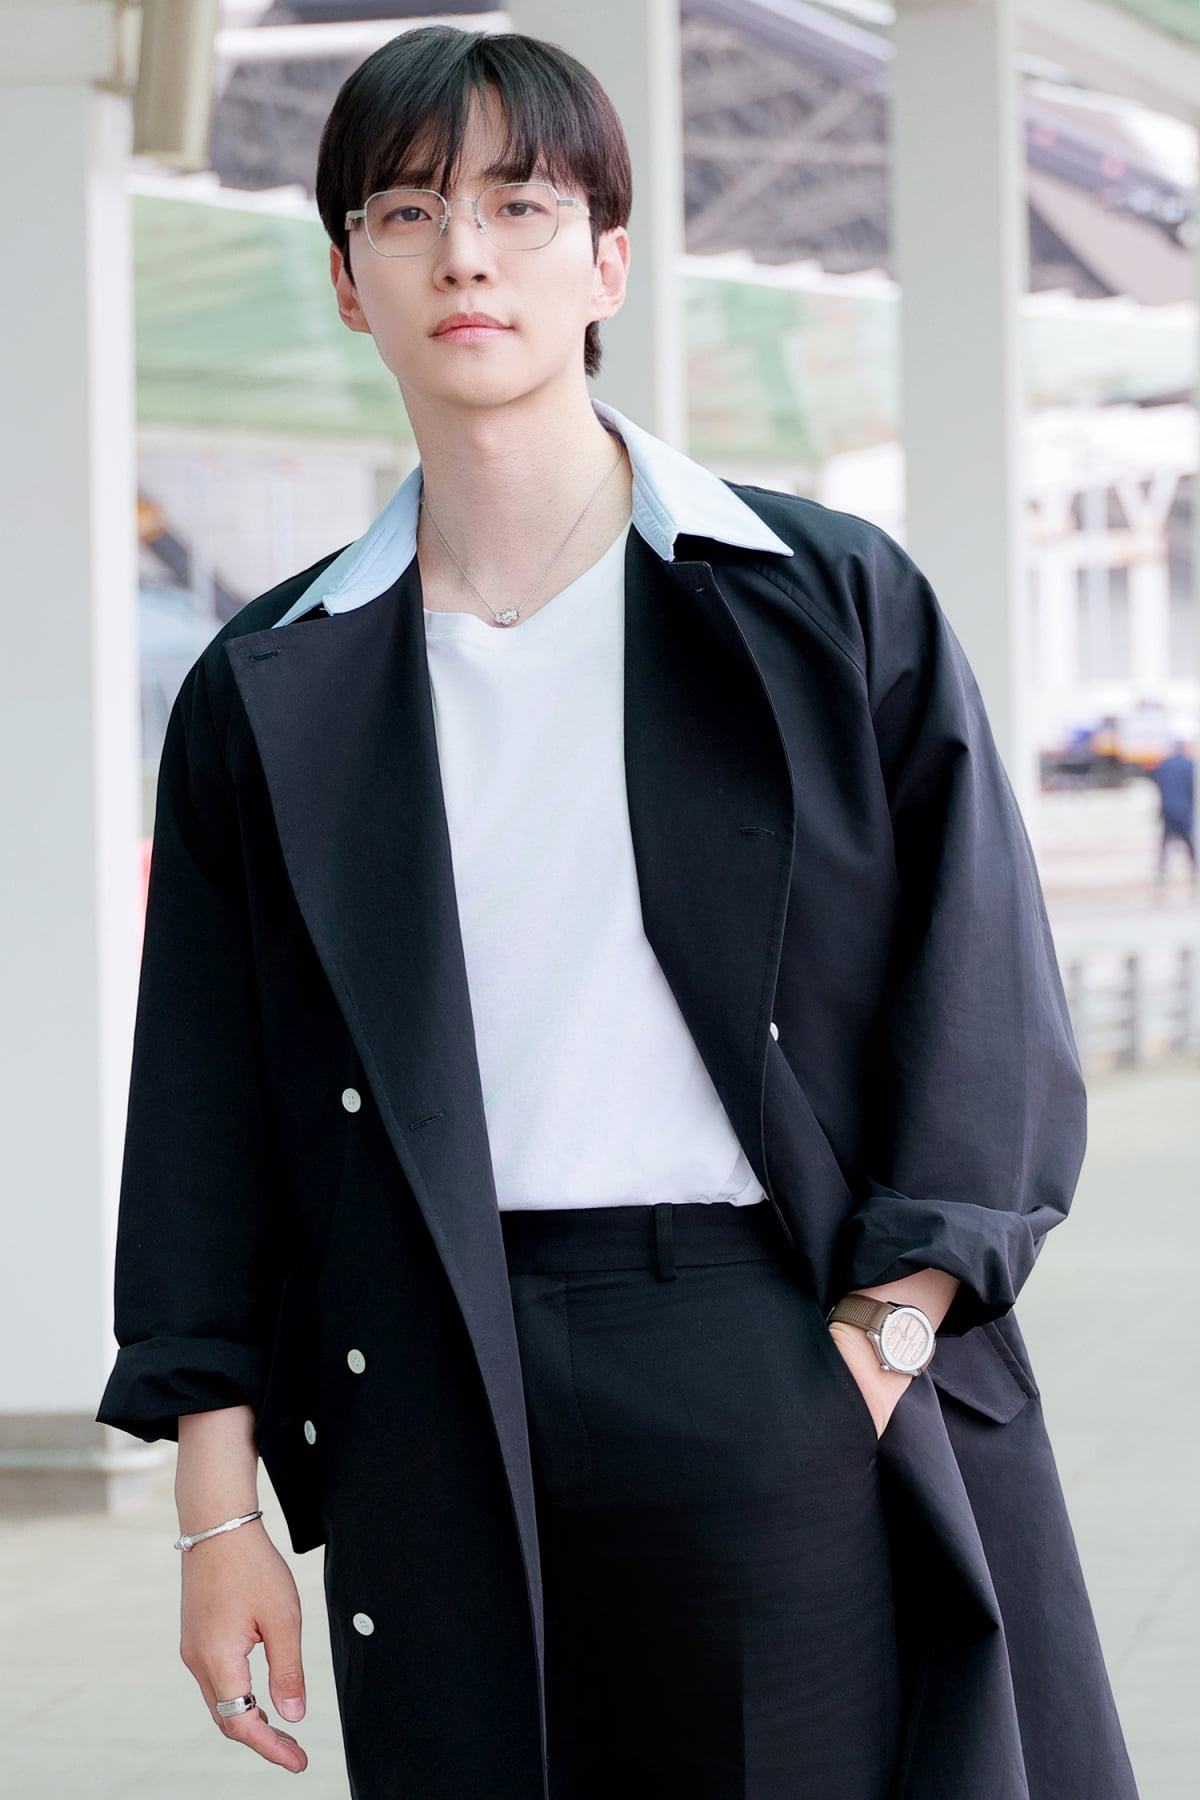 Lee Jun-ho, a symbol of elegance